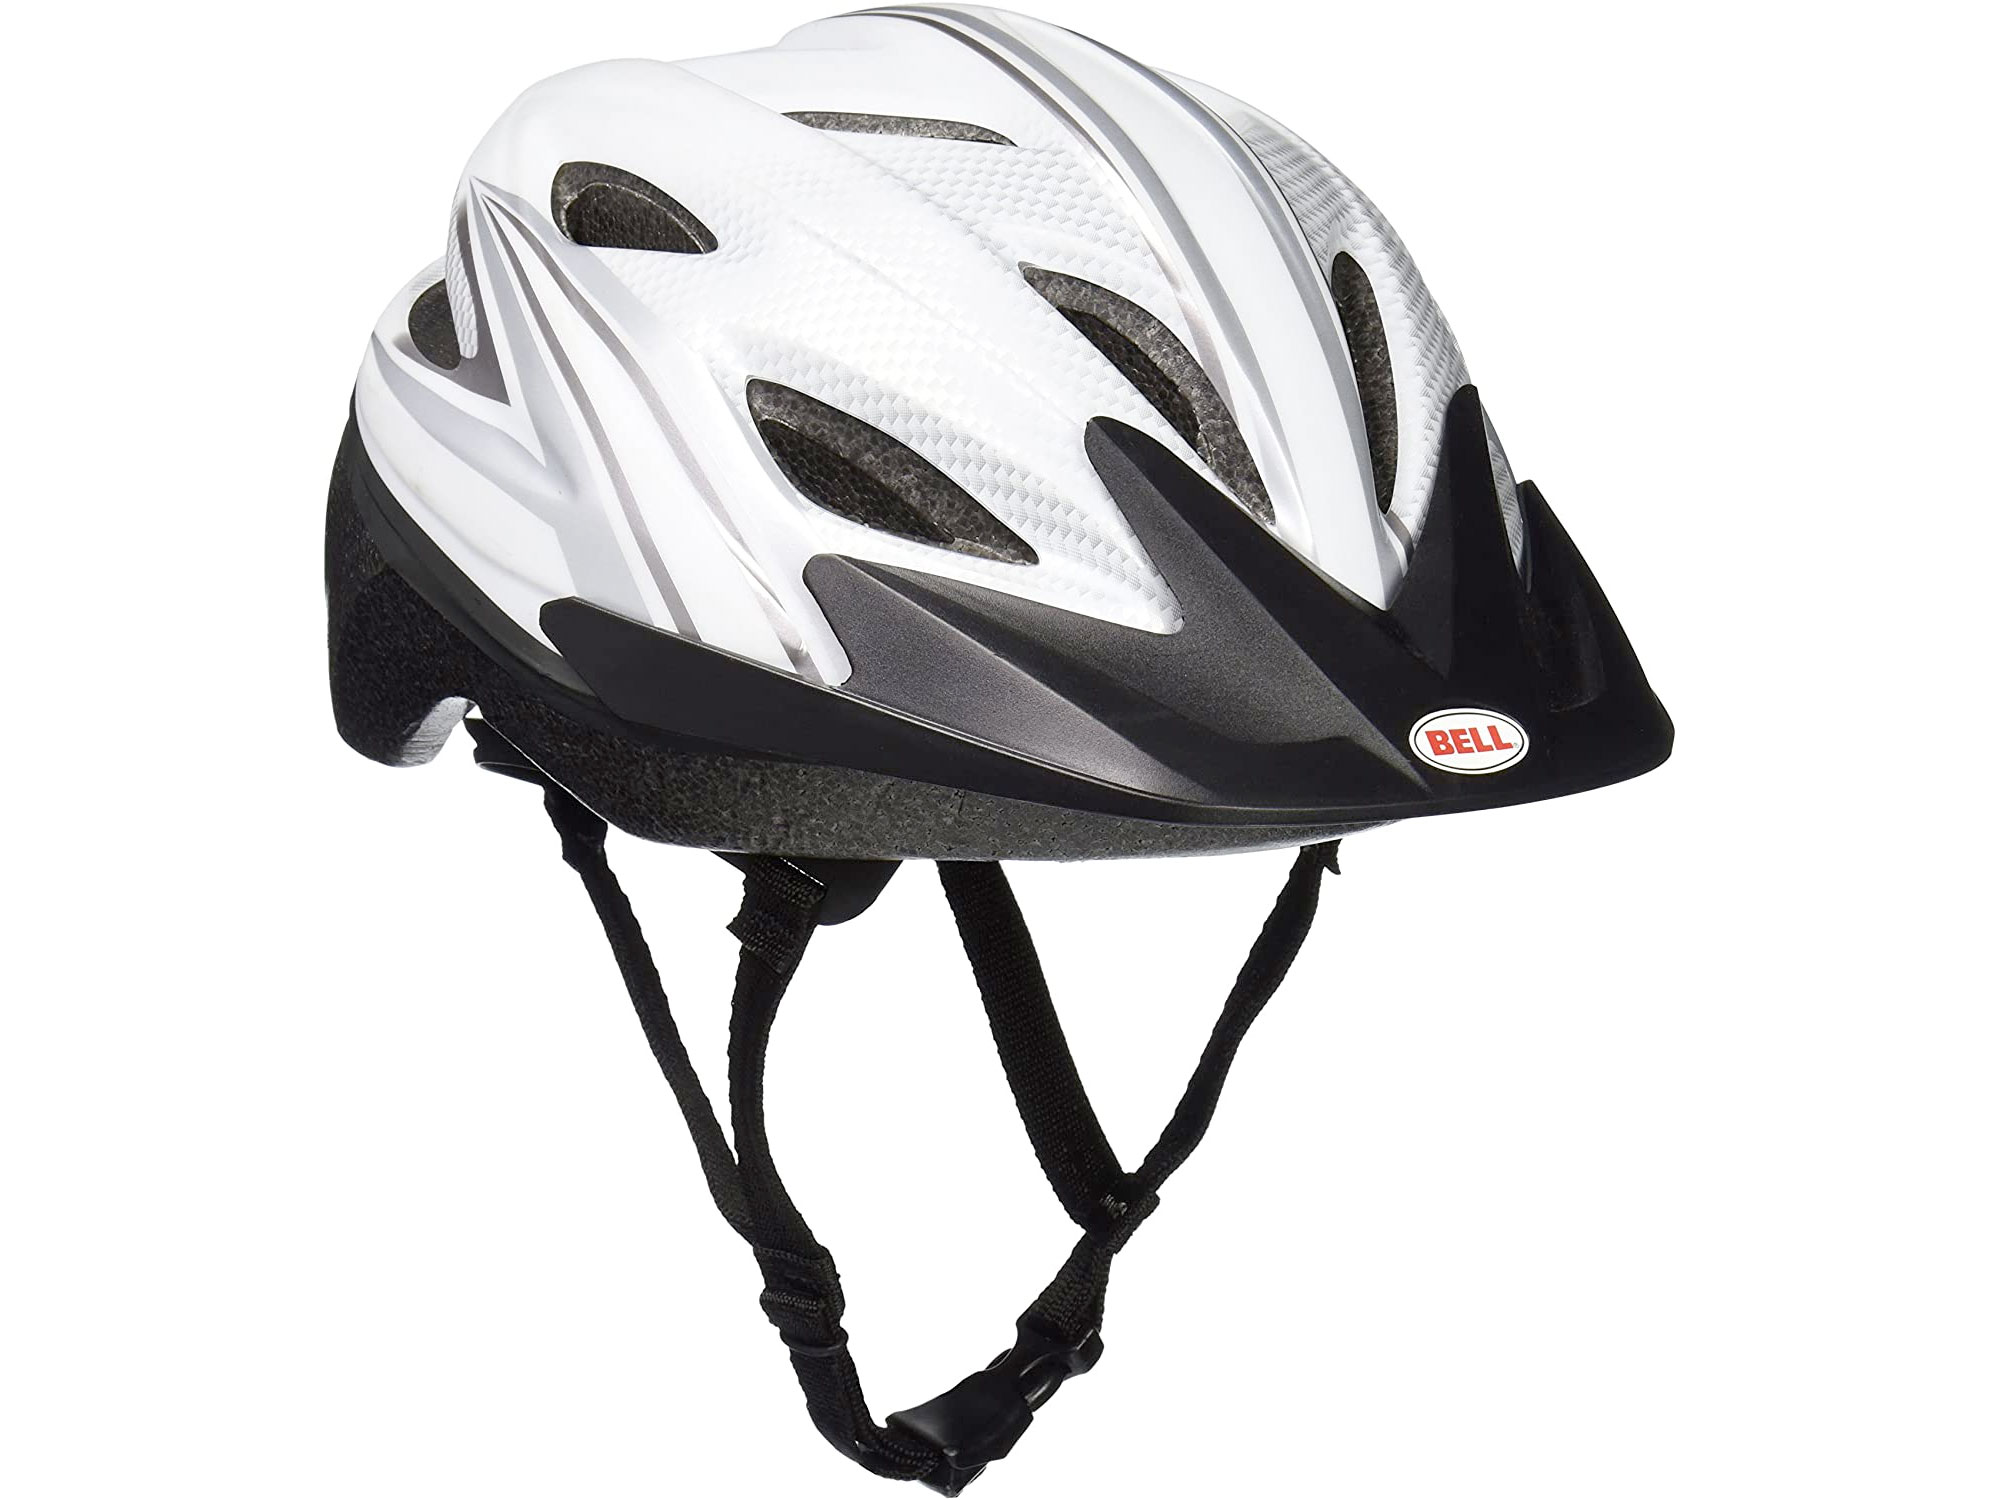 Amazon：Bell Adrenaline Bike Helmet只賣$21.99